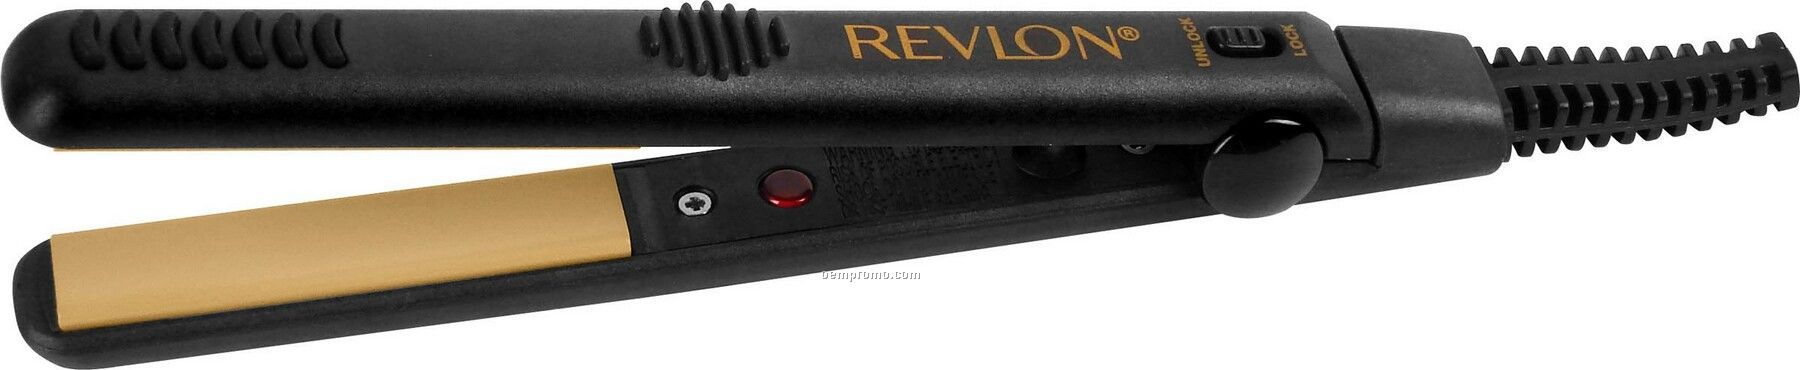 Revlon 0.5" Ceramic Travel Pro Mini Straightener